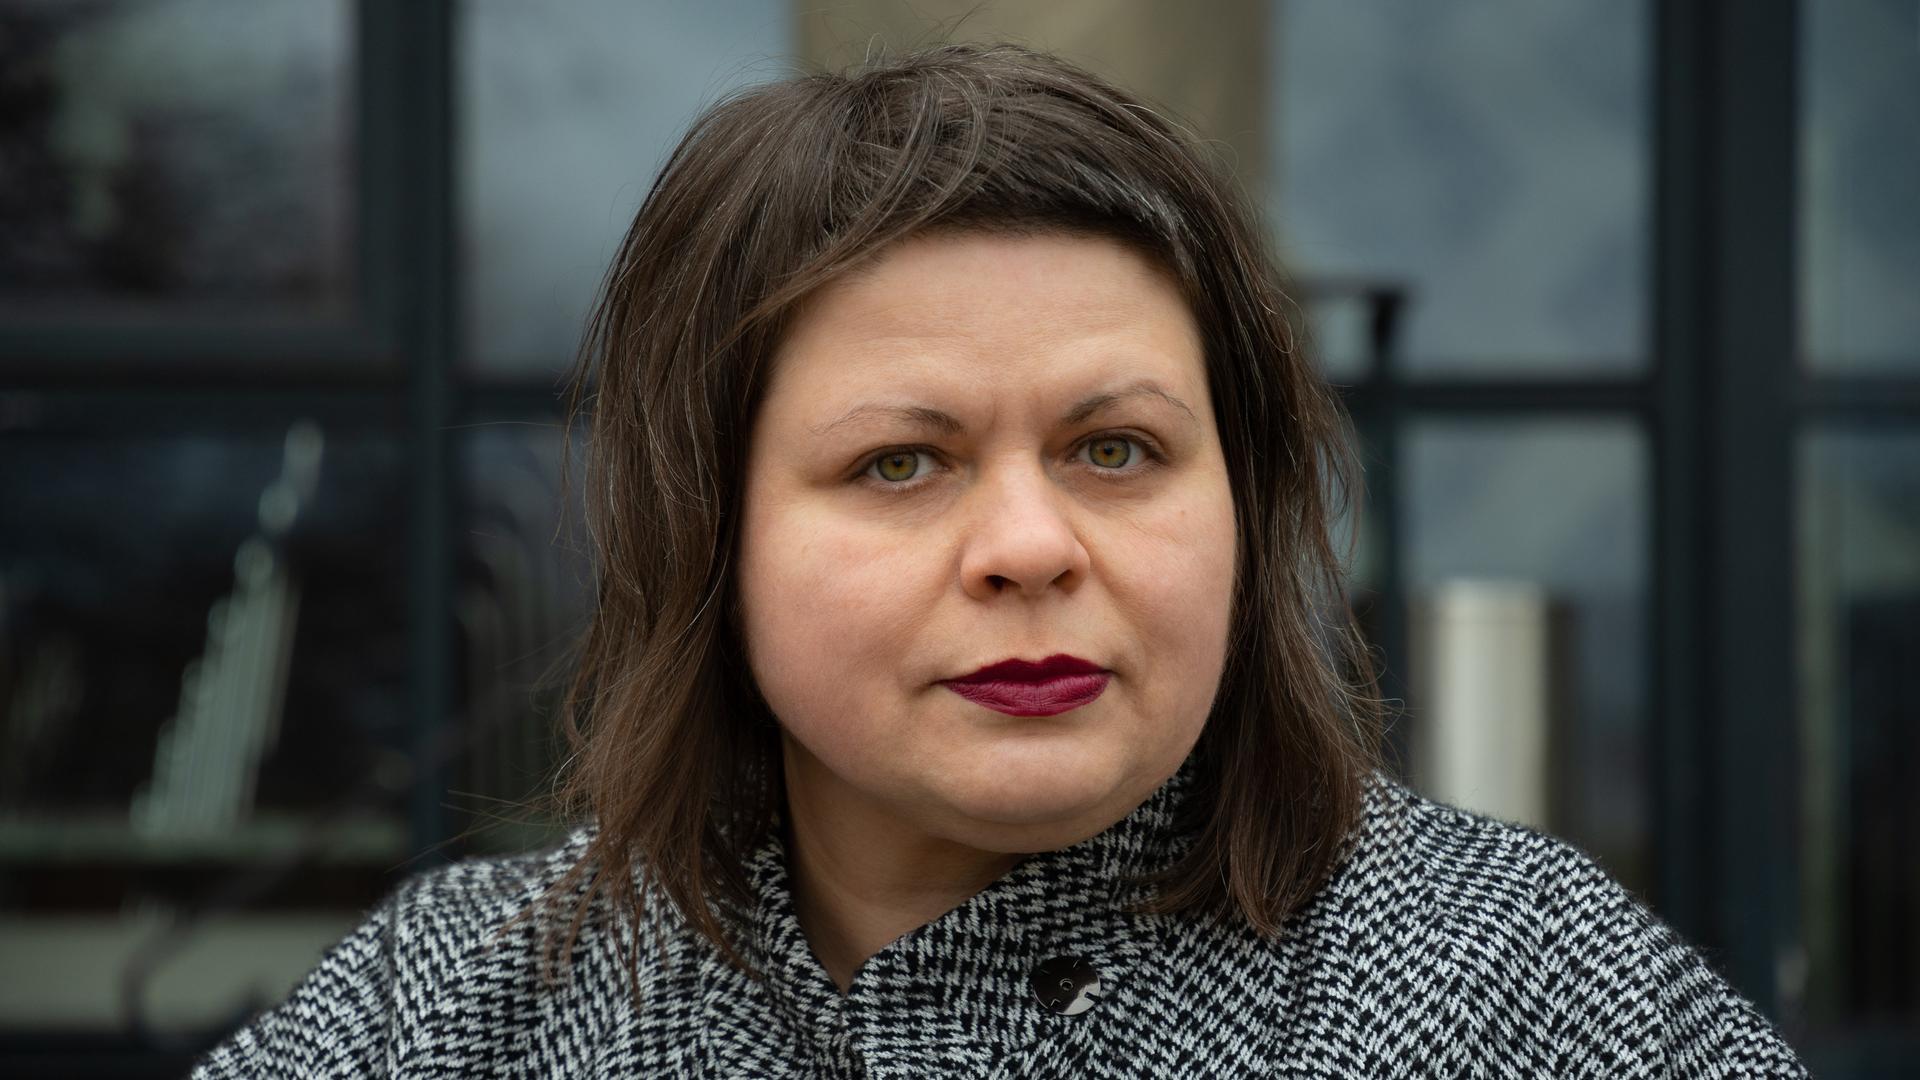 Porträt der Übersetzerin Iryna Herasimovich mit schulterlangem dunklen Haar und rotem Lippenstift